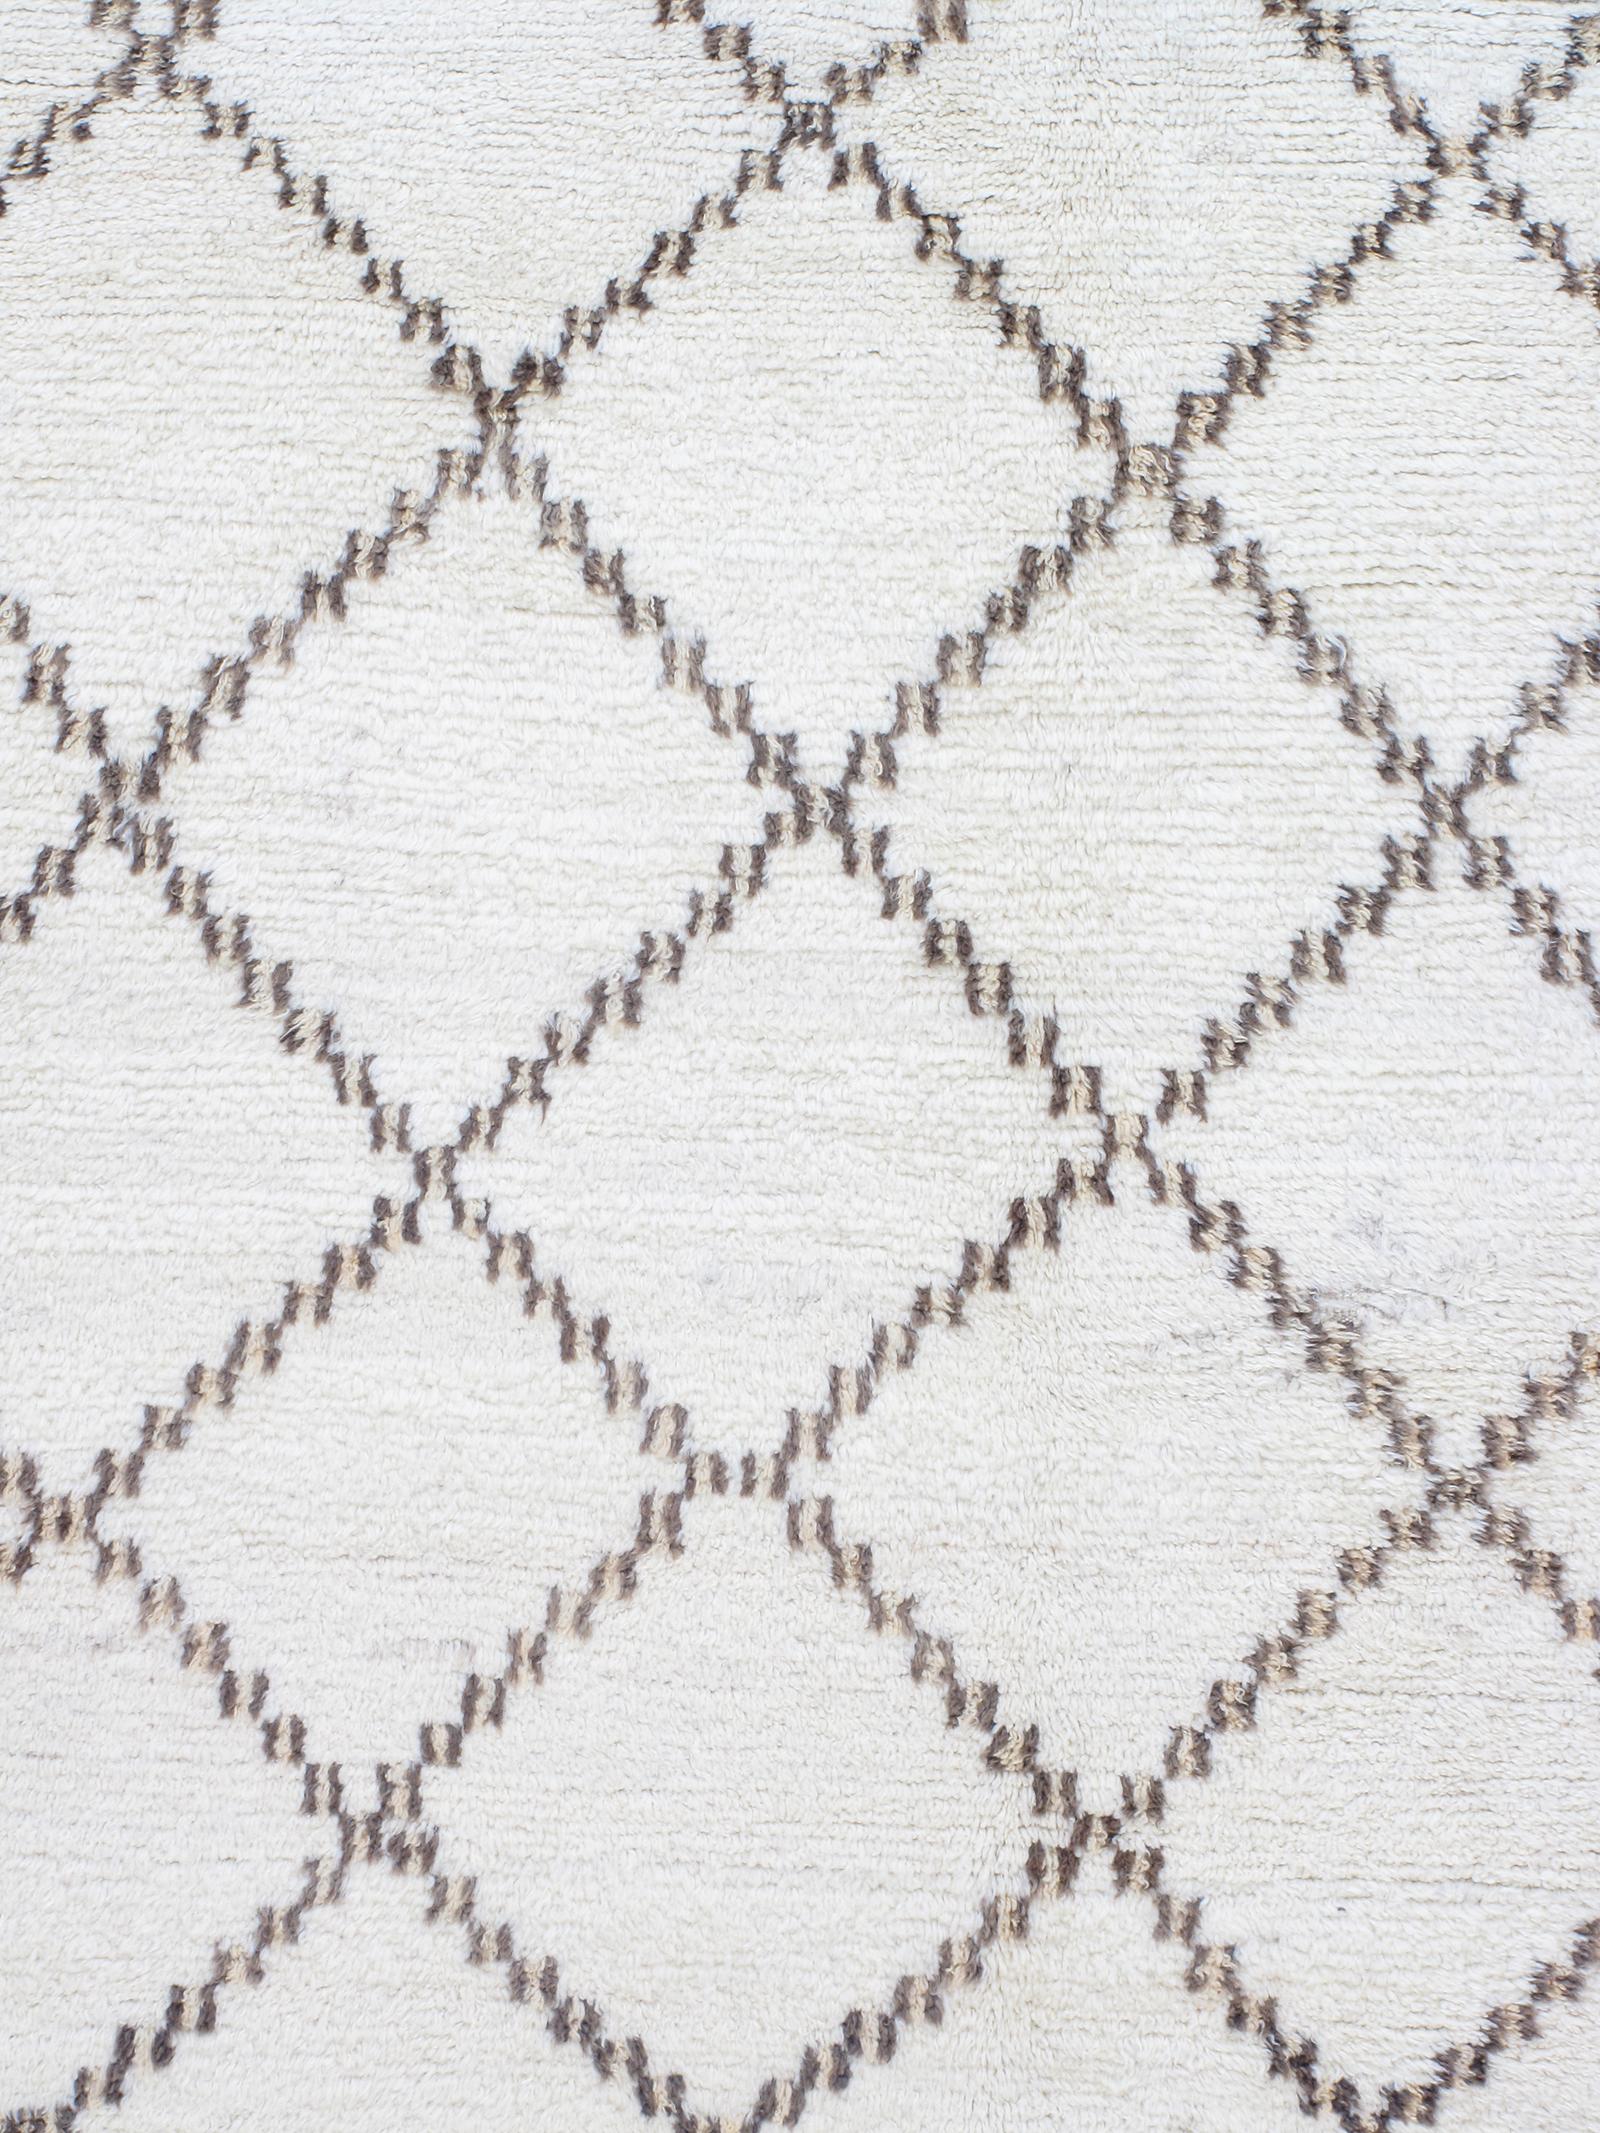 Unsere marokkanischen Vintage-Teppiche sind Teil einer sorgfältig zusammengestellten Sammlung seltener und ungewöhnlicher Designs. Sie werden aus natürlichen Farbstoffen und 100 % handgesponnener Wolle aus dem Atlasgebirge in Nordafrika hergestellt.